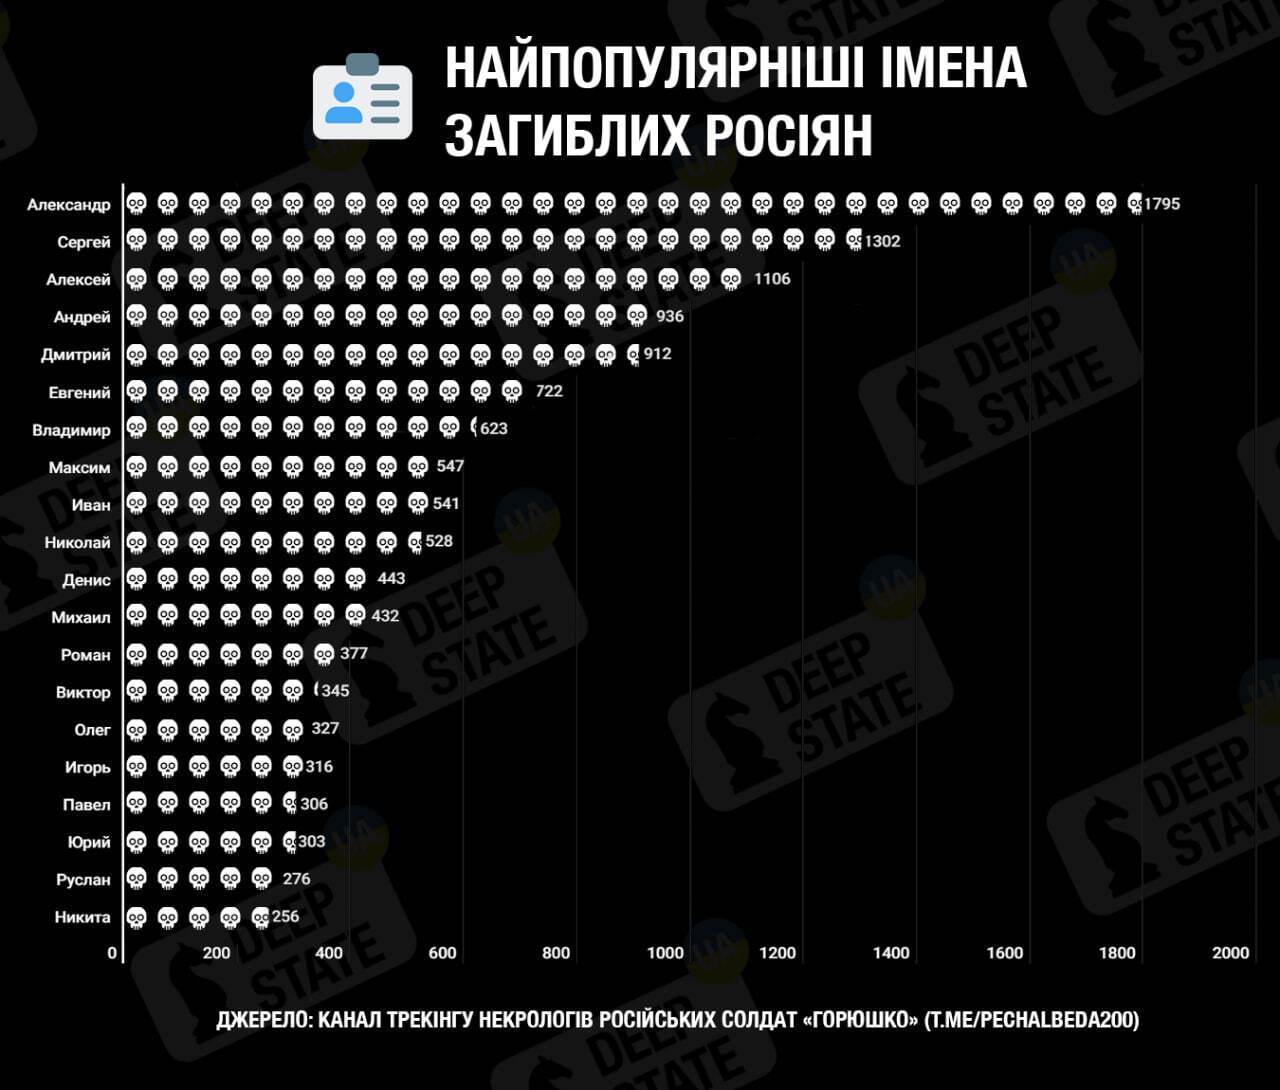 "Уже не Ваньки": росіяни із якими іменами найчастіше гинуть в Україні. Інфографіка